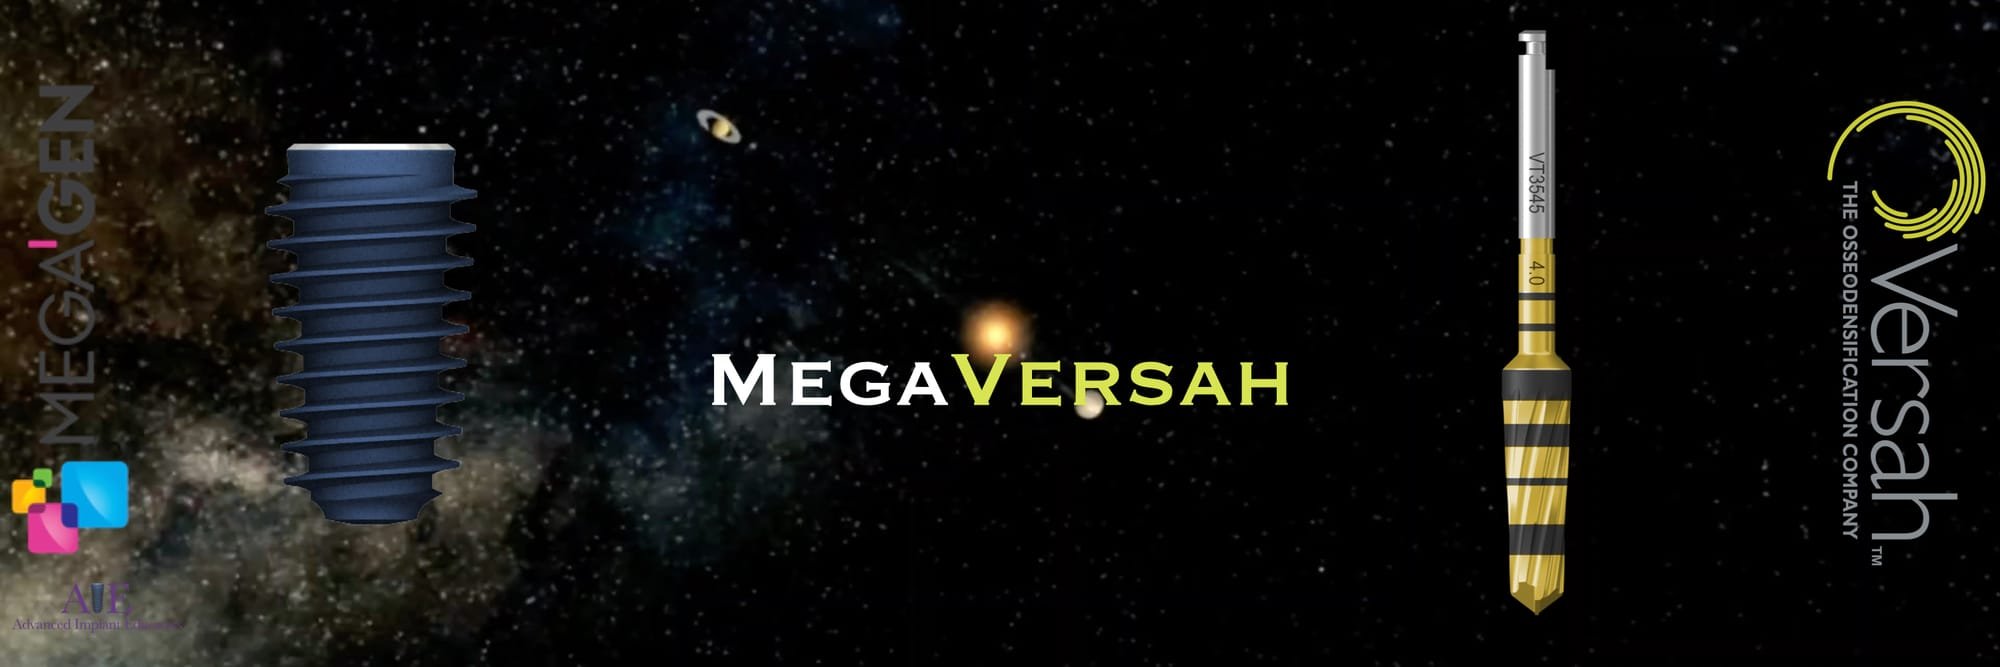 MegaVersah